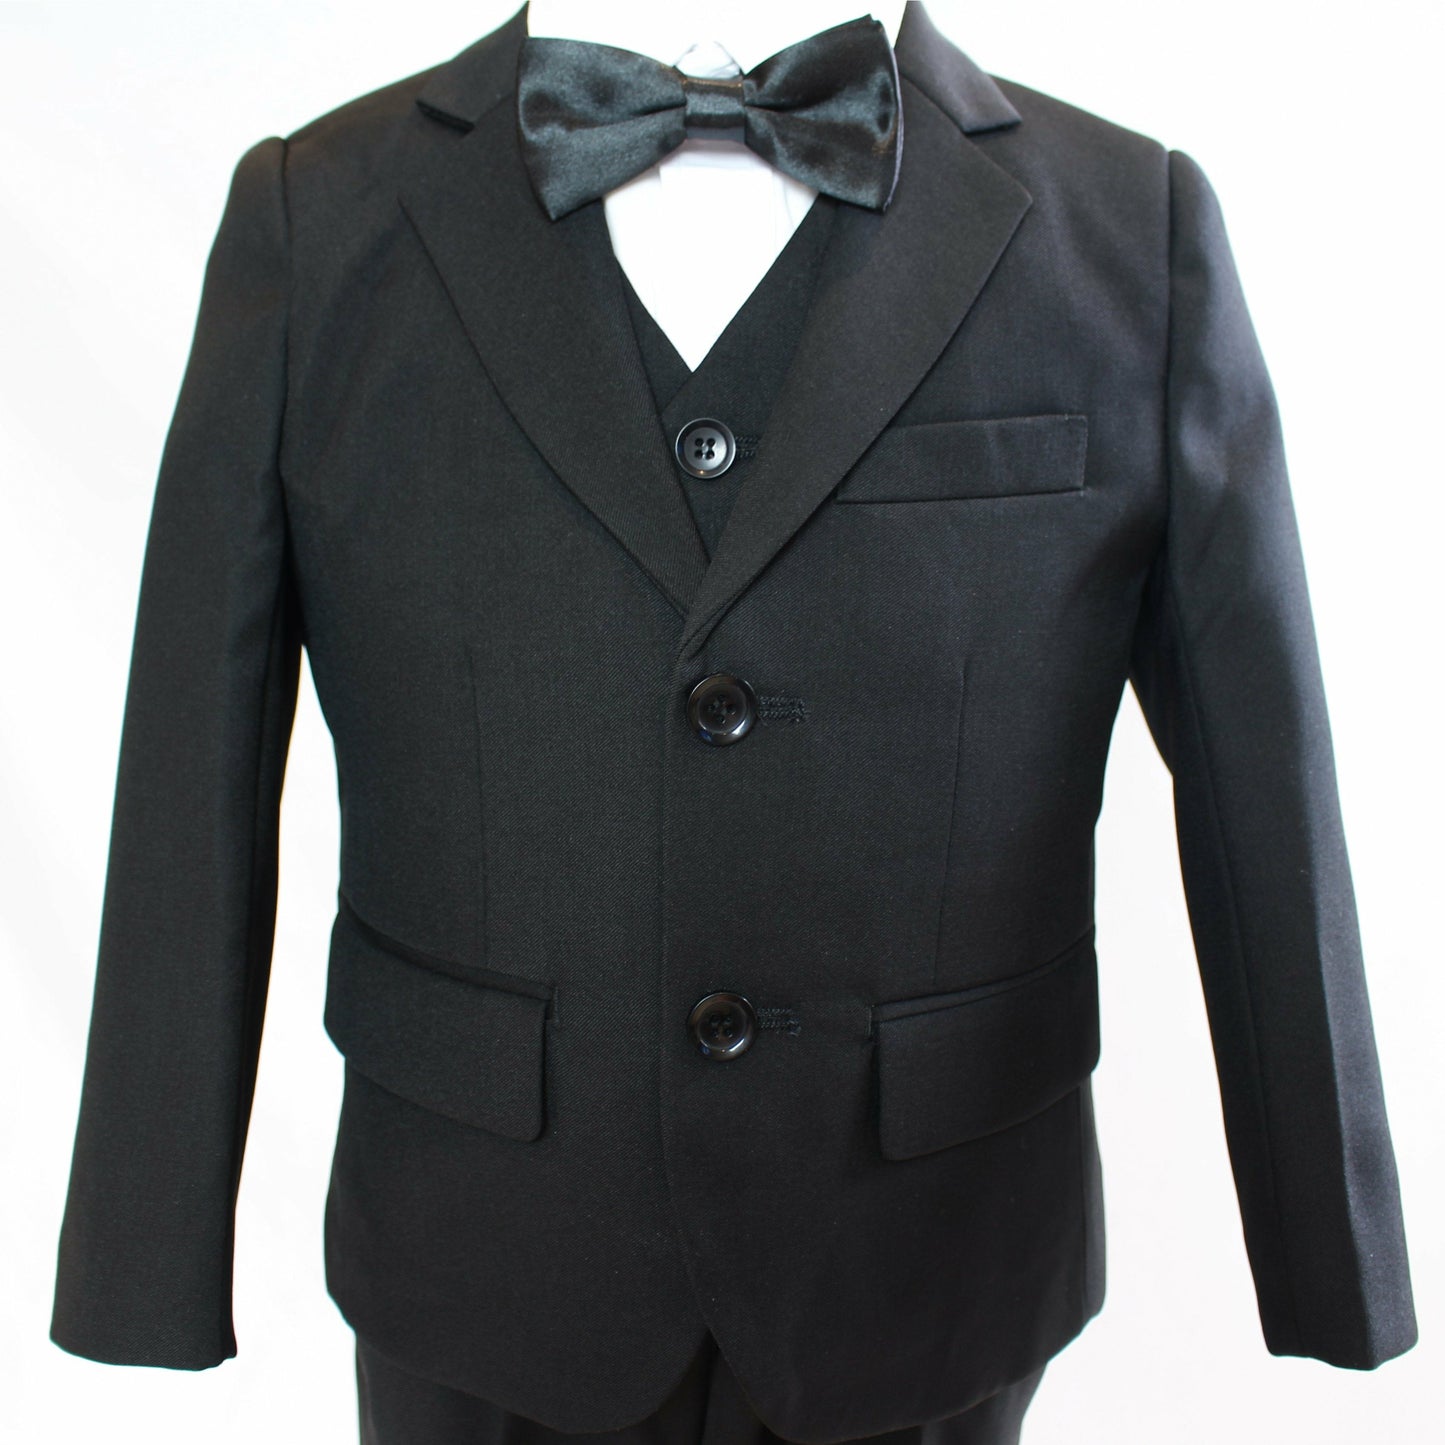 Classic black suit set